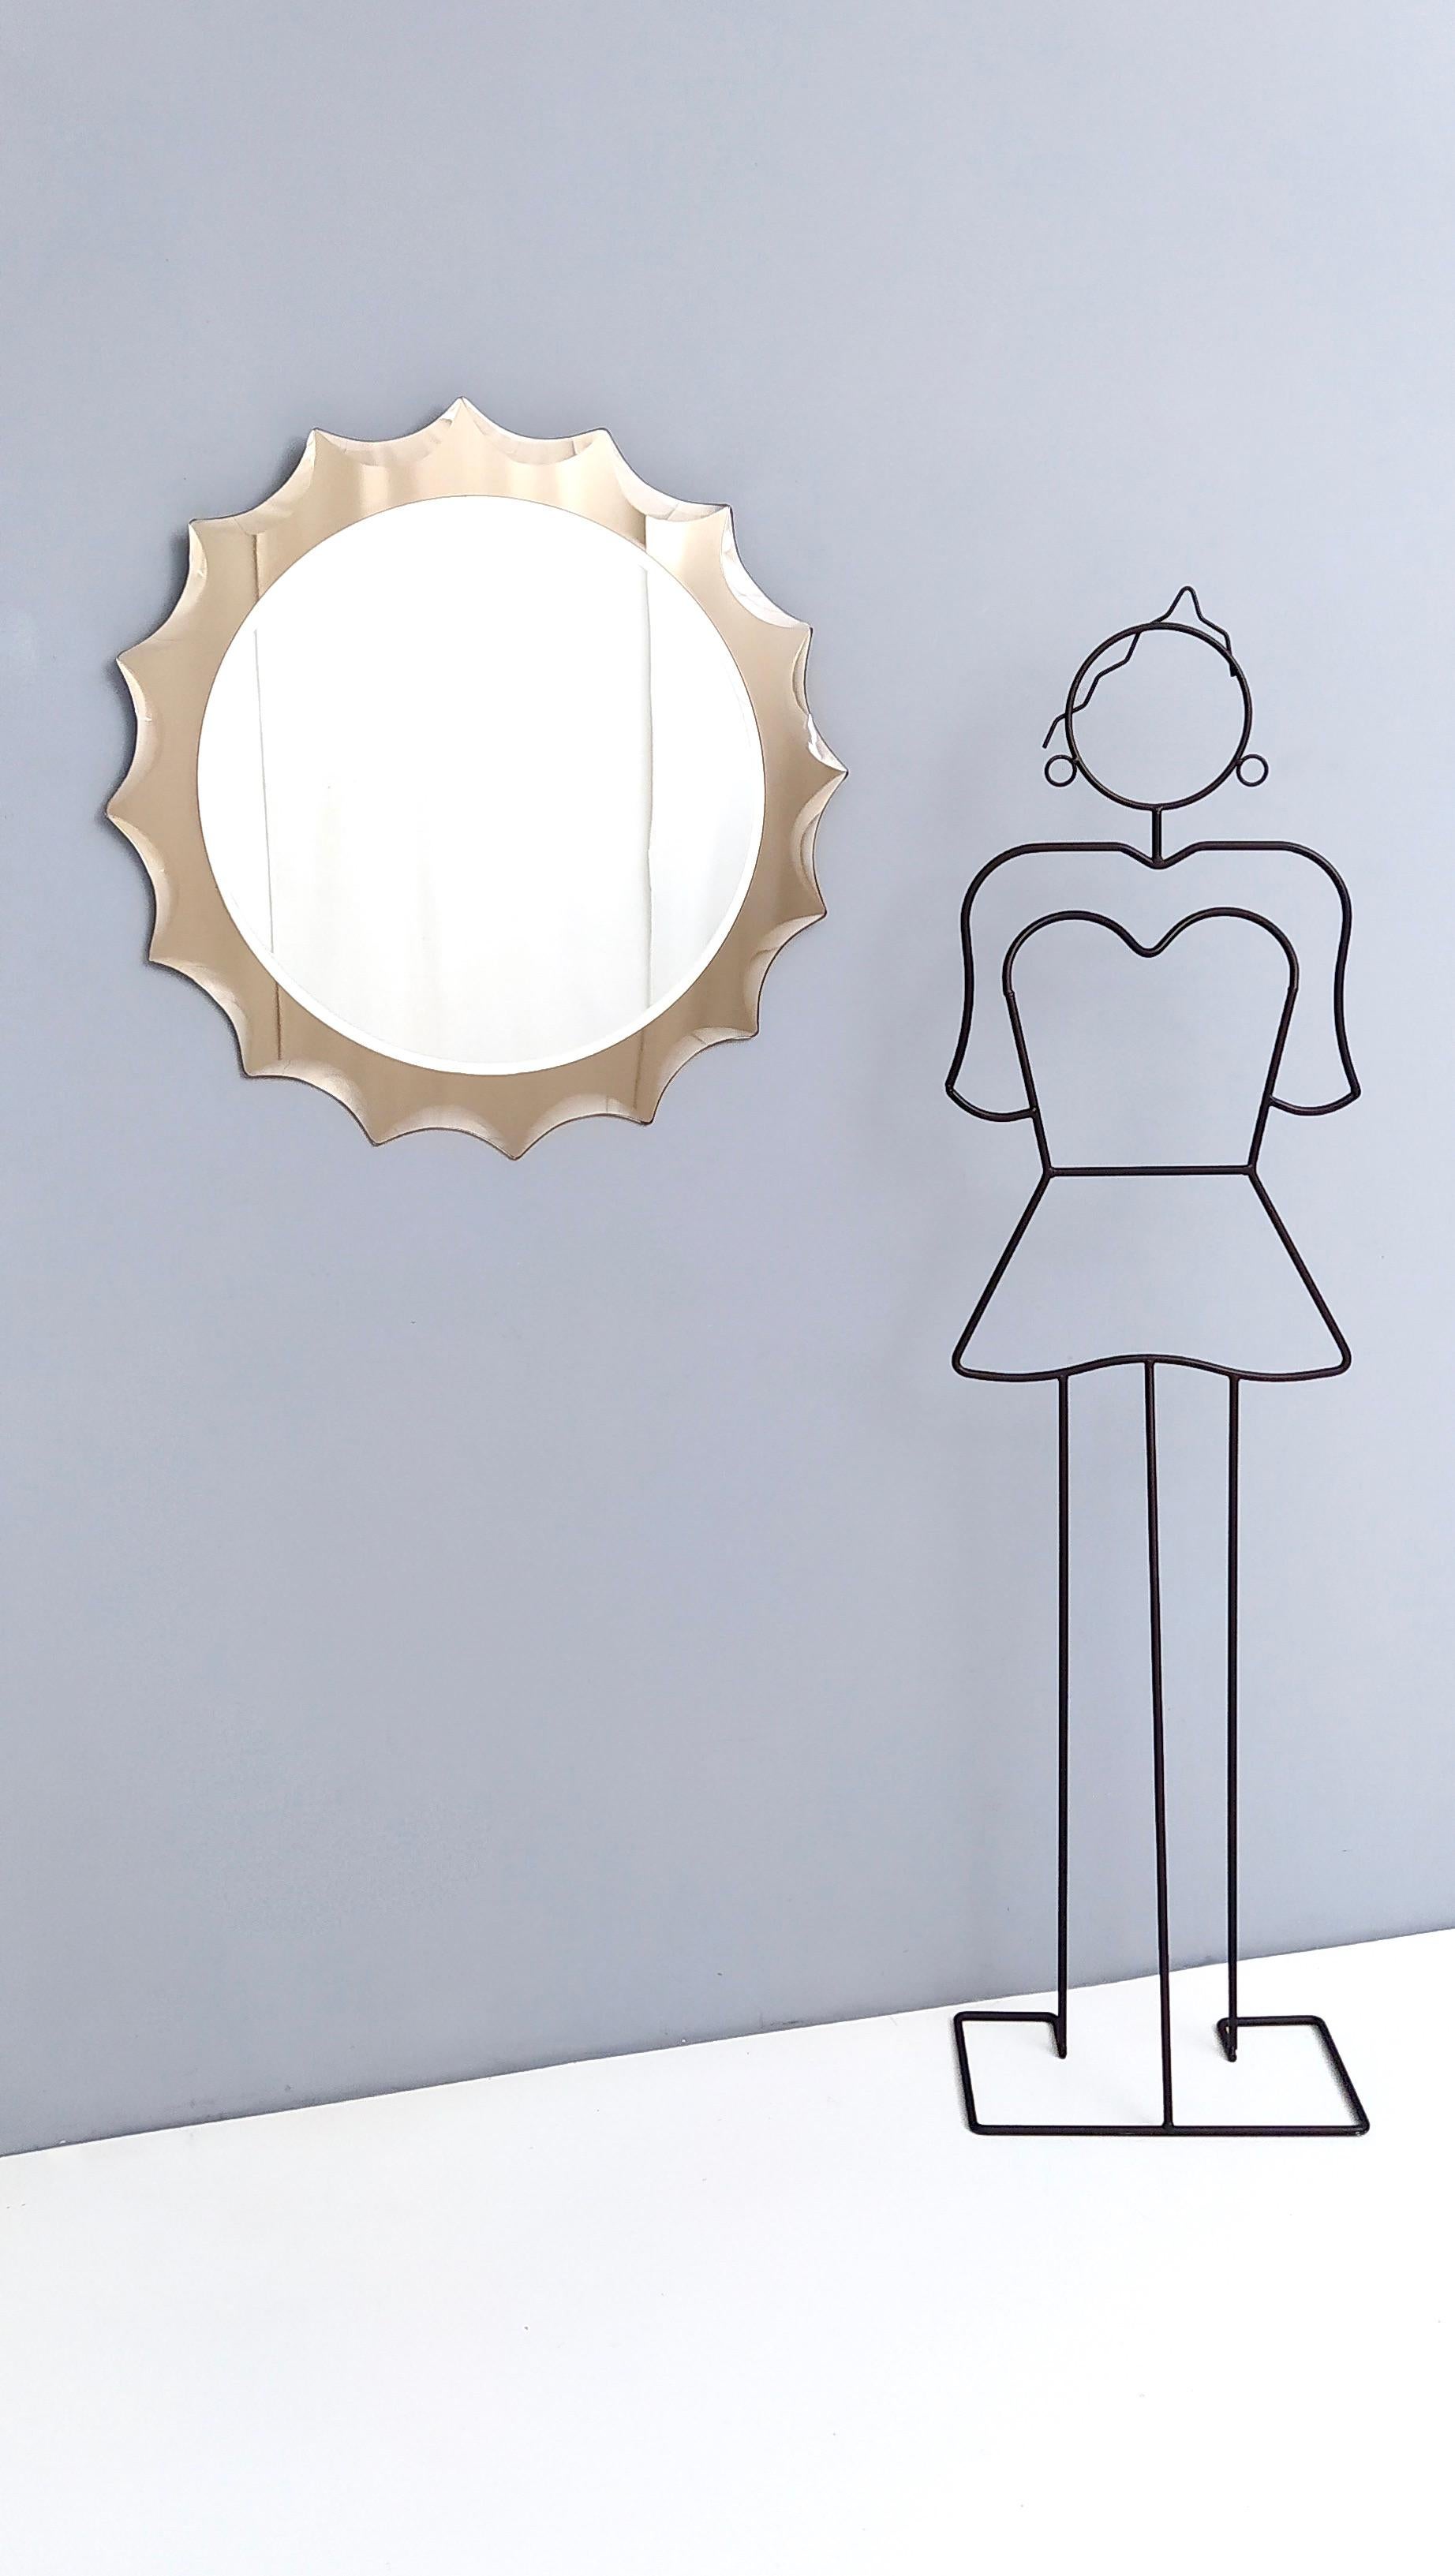 Fabriqué en Italie, années 1970.
Ce miroir présente un cadre en bronze avec des biseaux décoratifs sur les bords et un dos en métal verni.
Il s'agit d'une pièce vintage qui peut donc présenter de légères traces d'utilisation, mais qui peut être